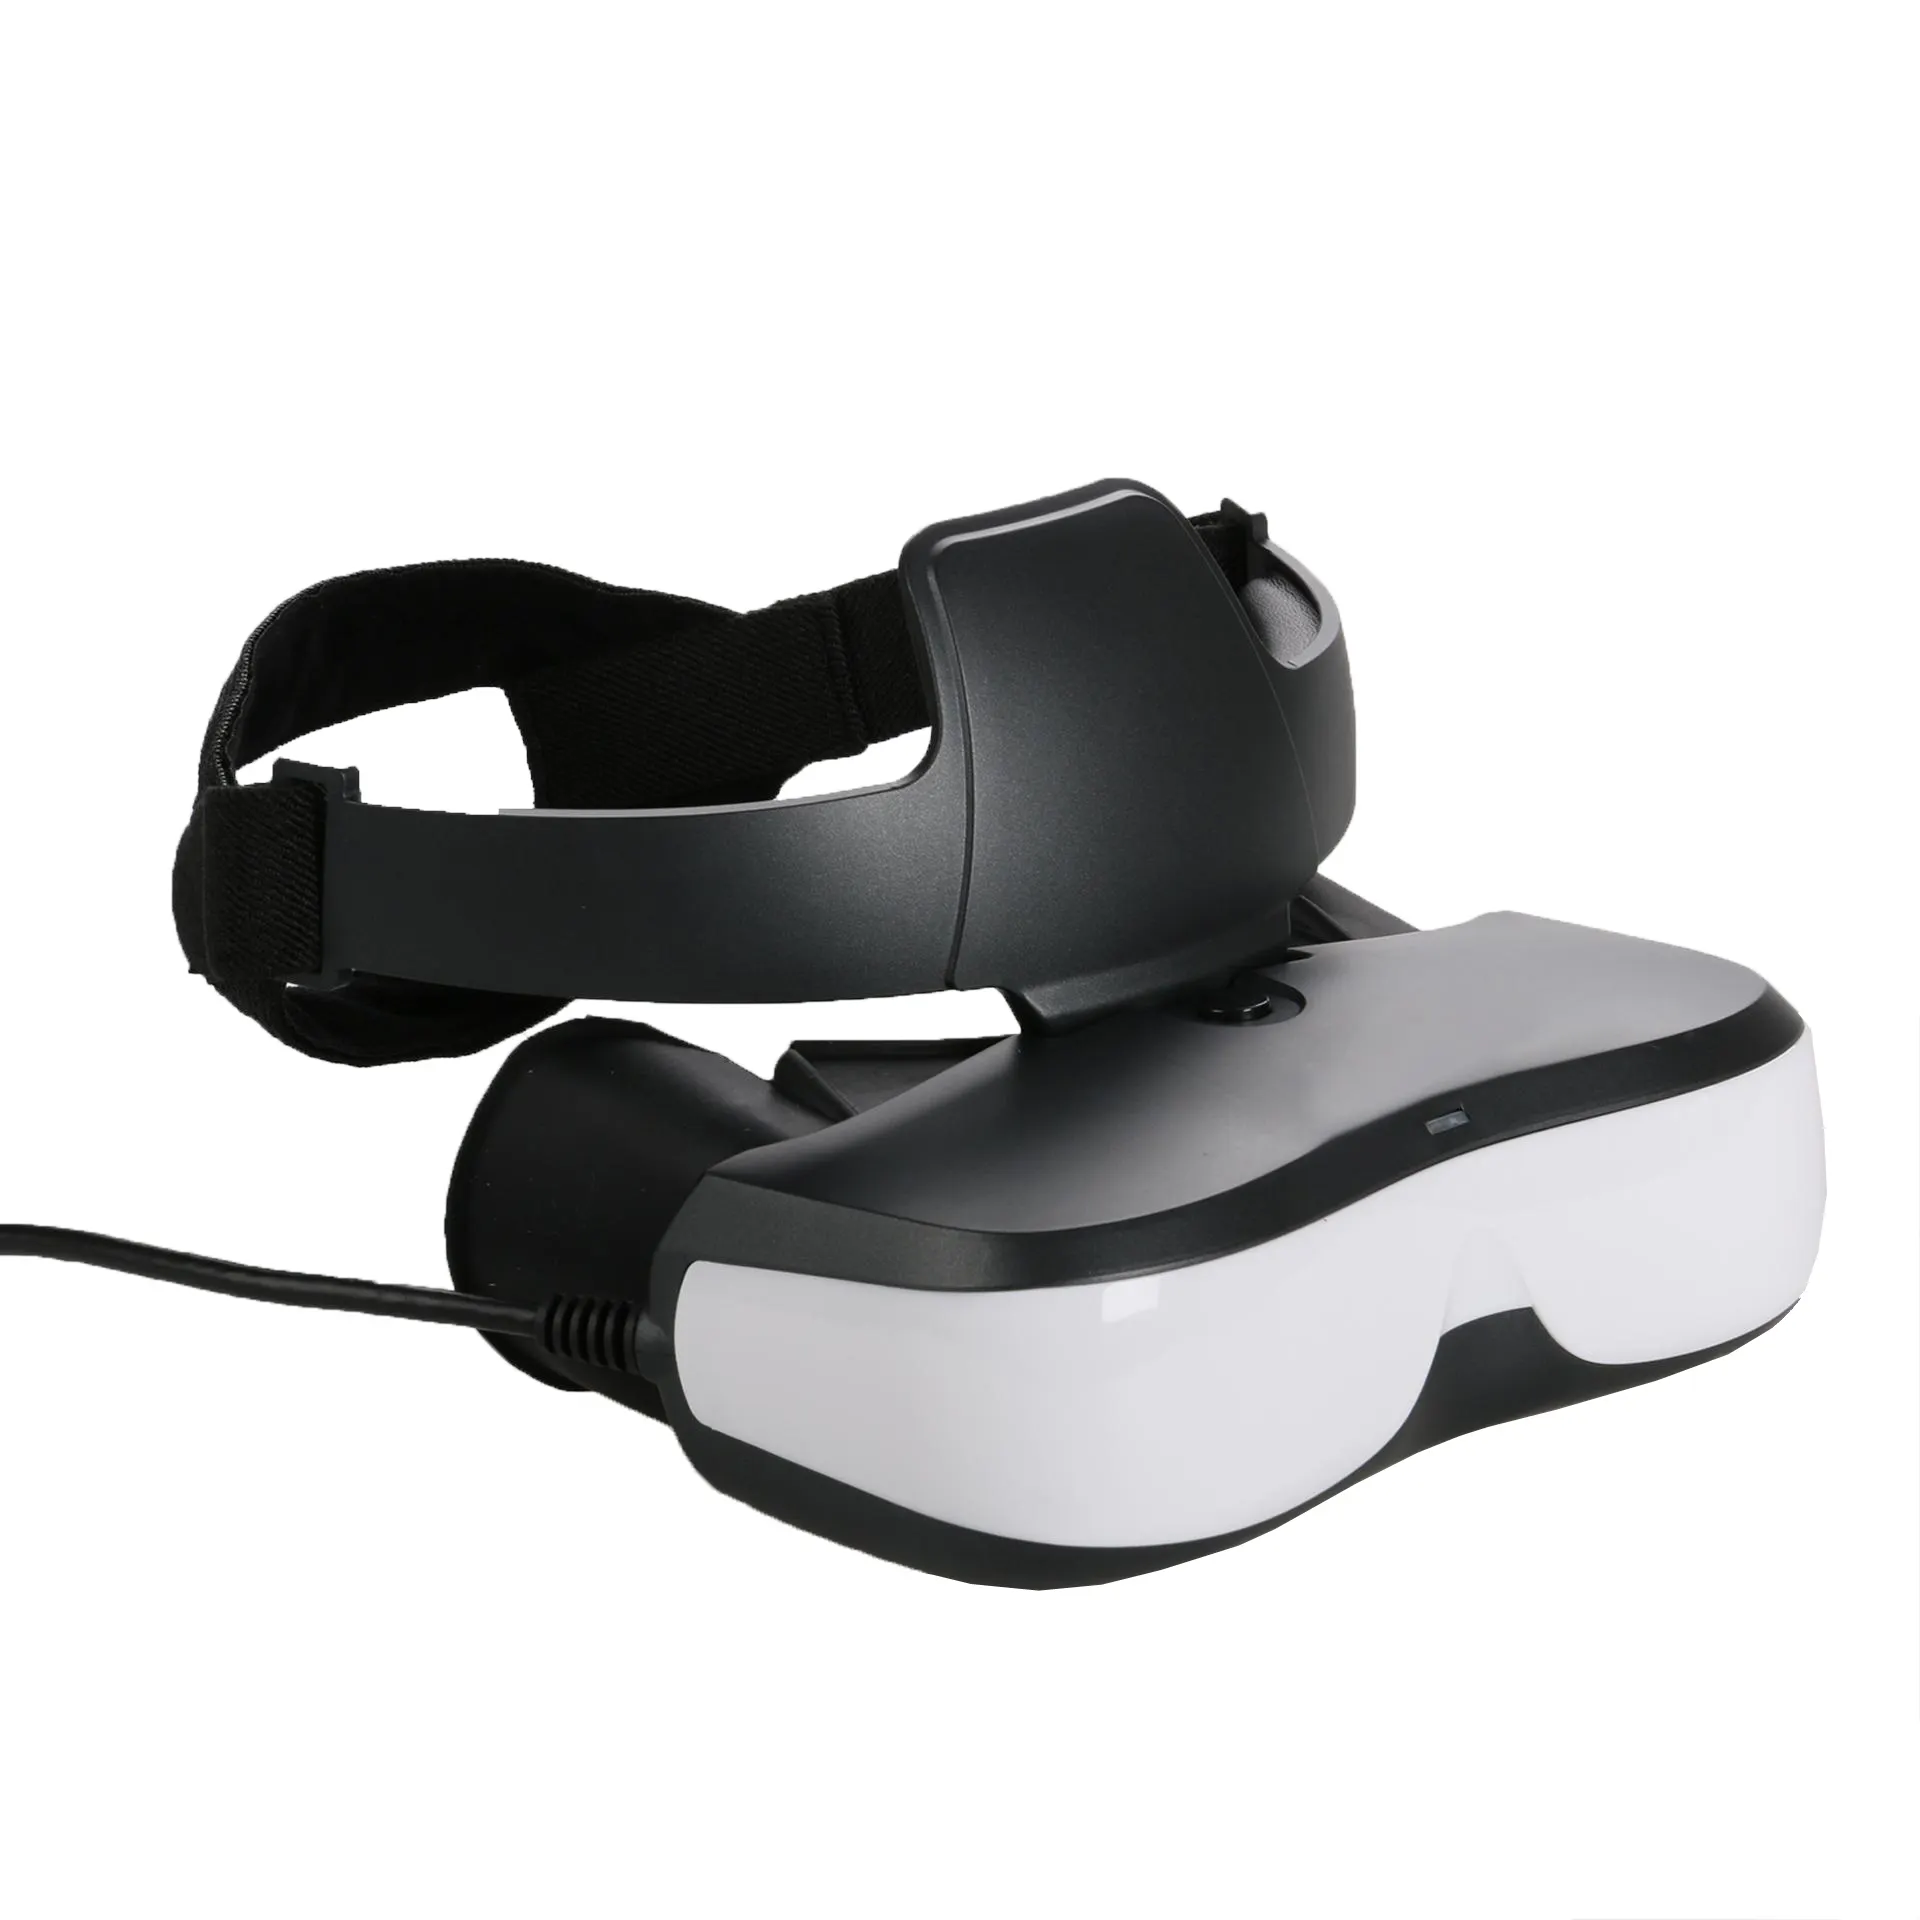 3D видео очки Vision HMD шлем бинокль HD дисплей с HDMI входом использование в PS4,PS5, переключатель, UAV видео очки E536